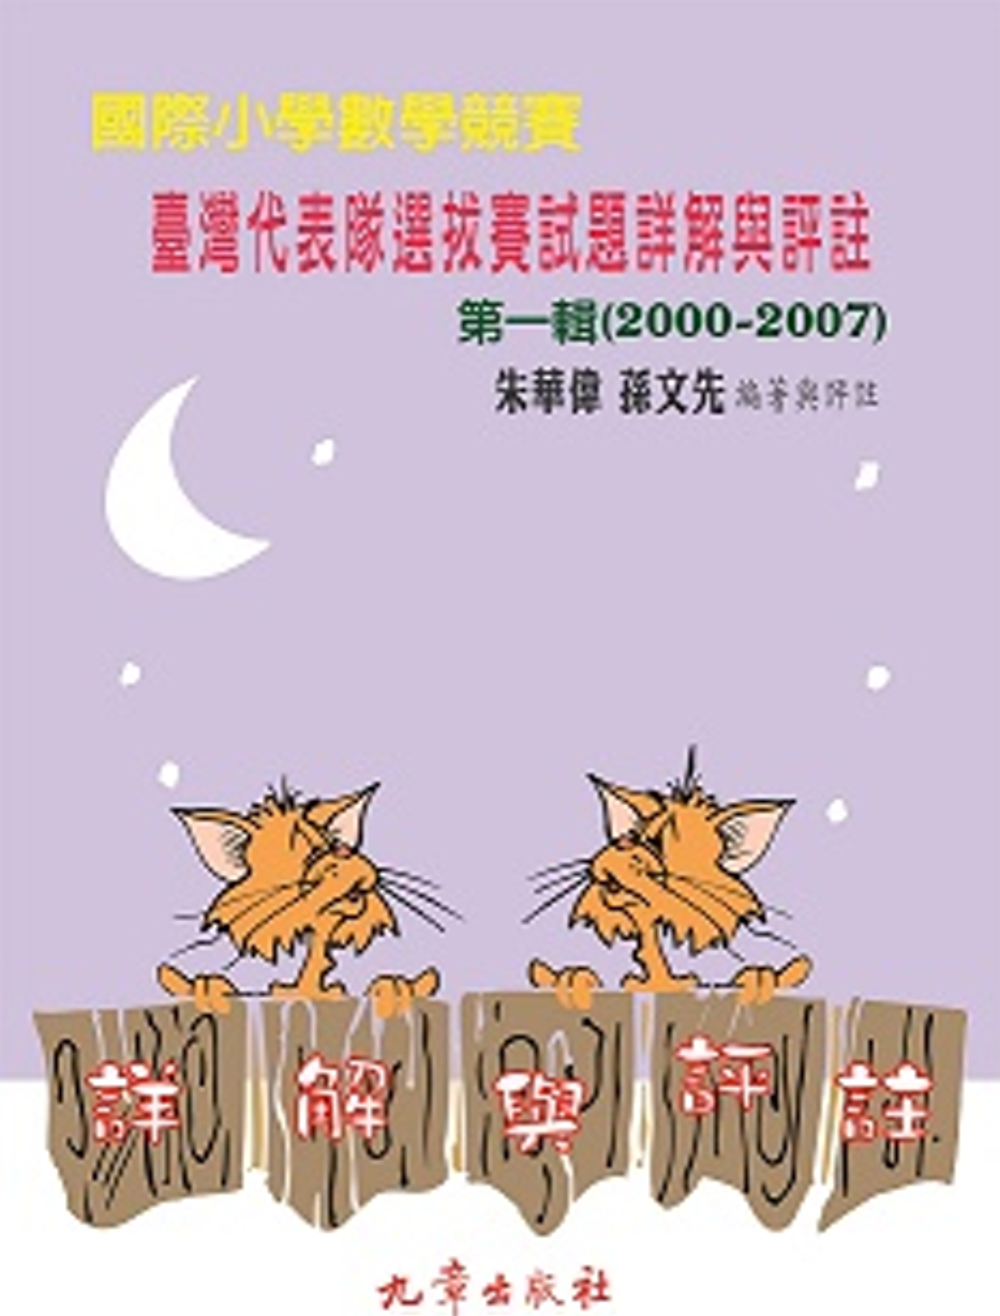 國際小學數學競賽 臺灣代表隊選拔賽試題詳解與評註 第一輯(2000-2007)